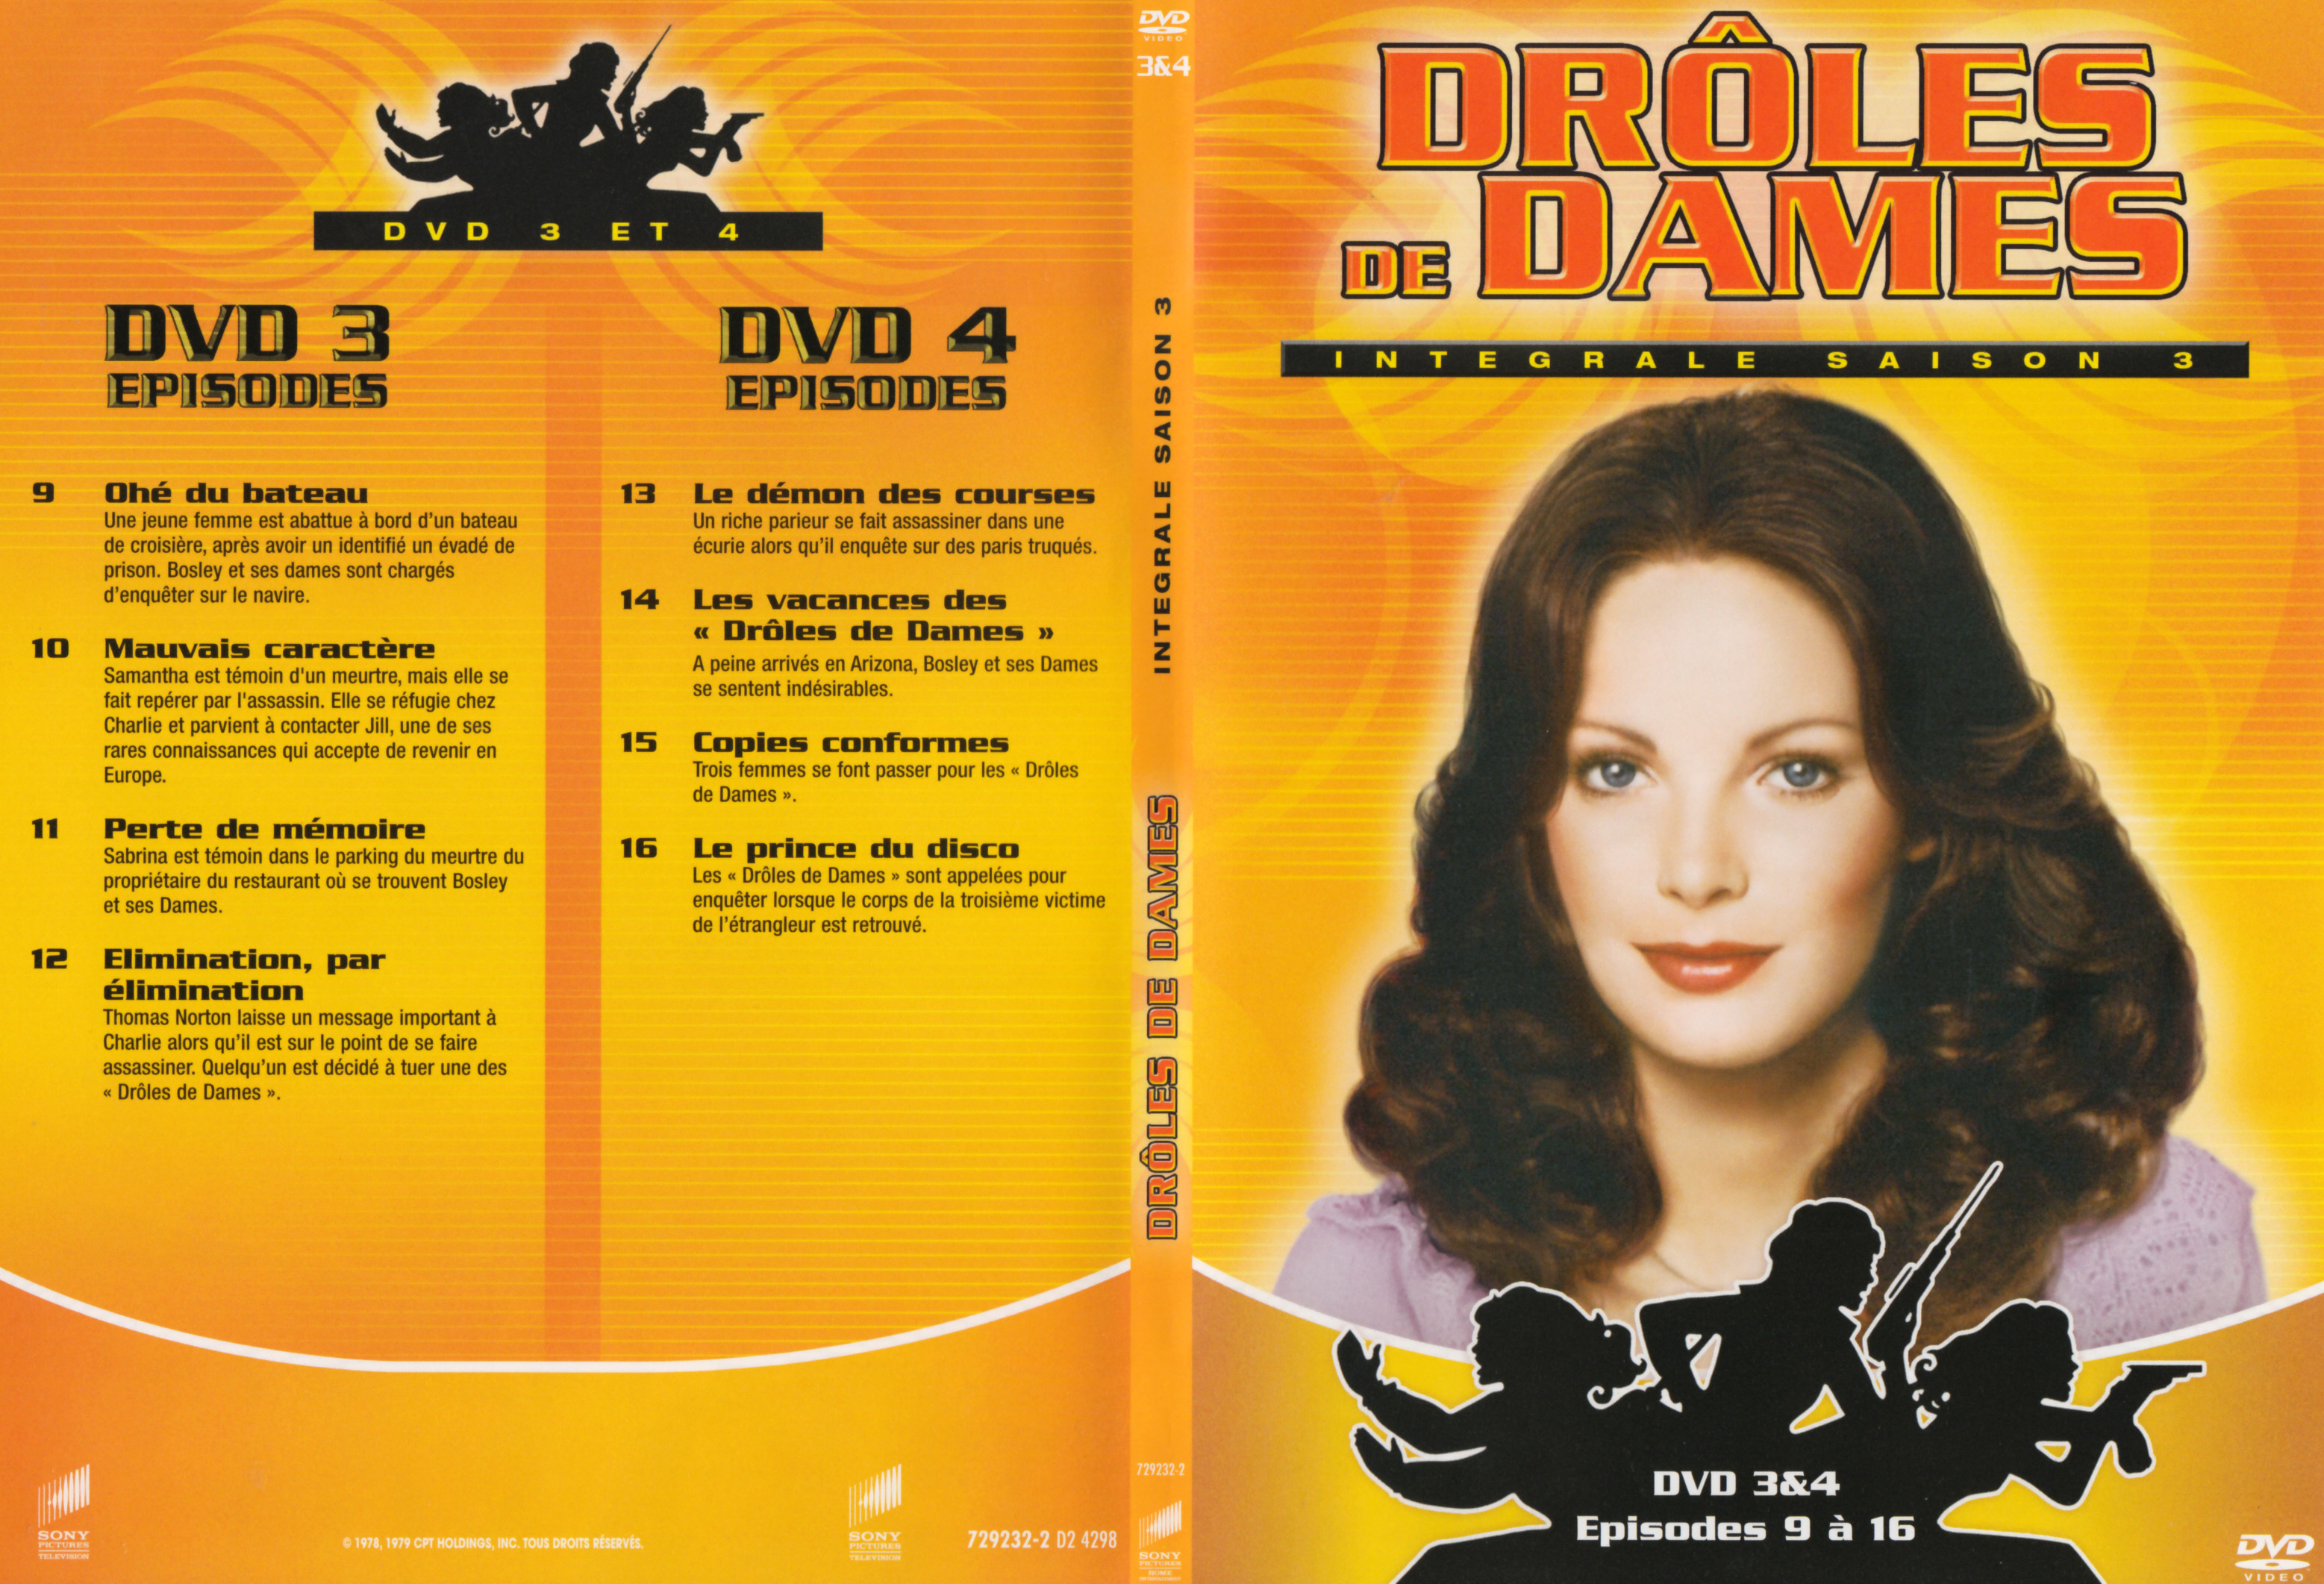 Jaquette DVD Drles de dames Saison 3 DVD 2